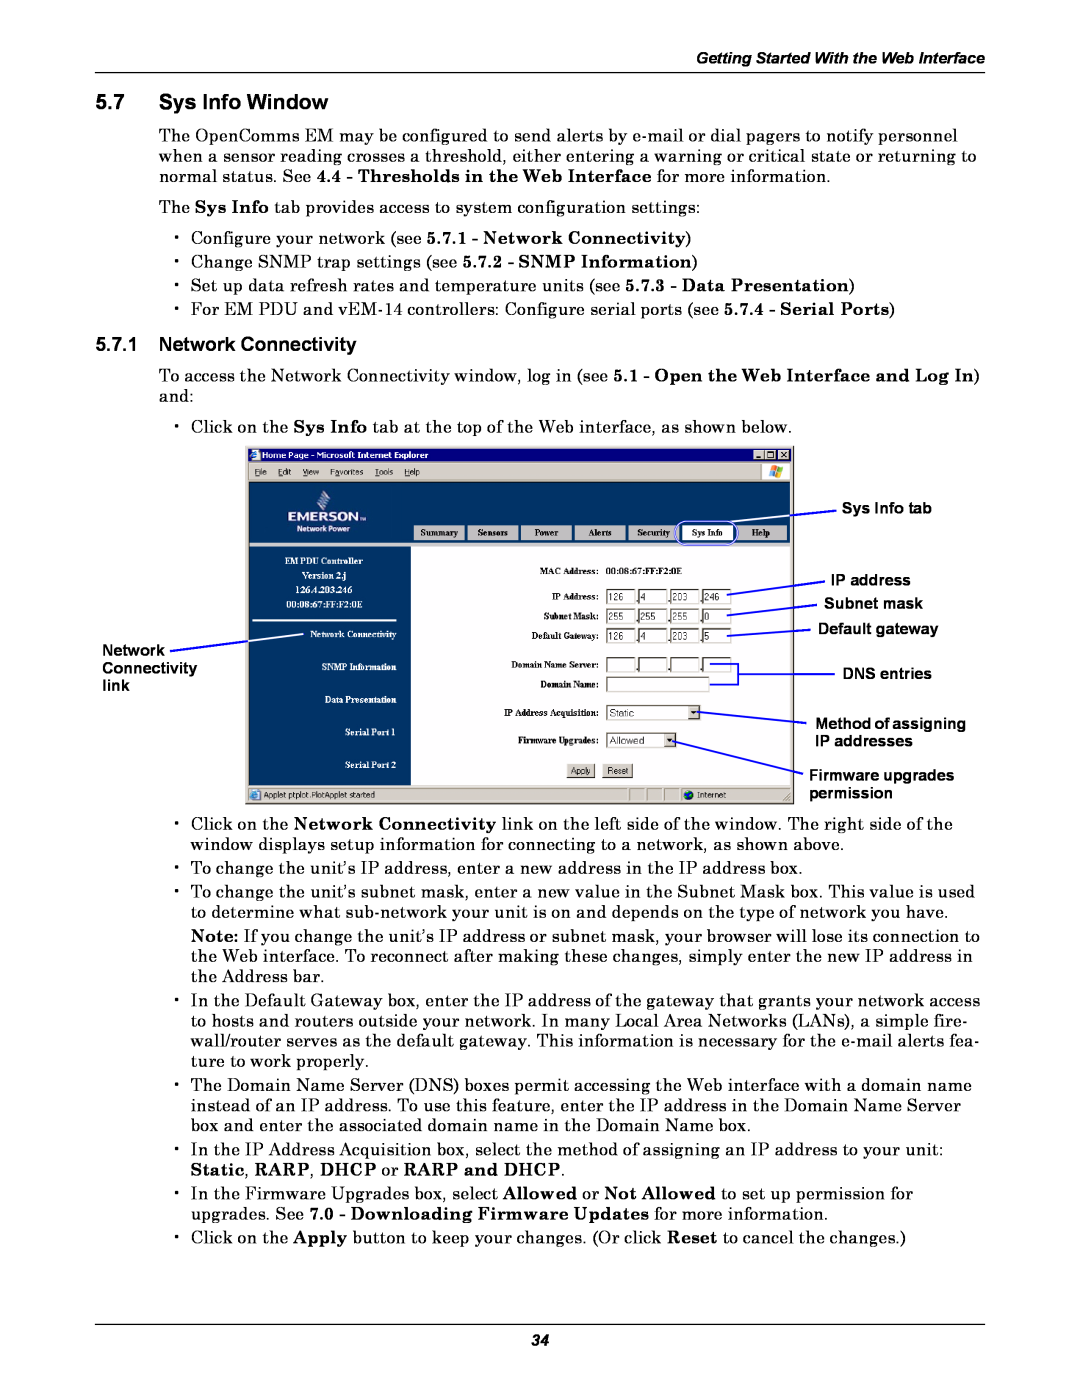 Liebert EM manual Sys Info Window, Network Connectivity 